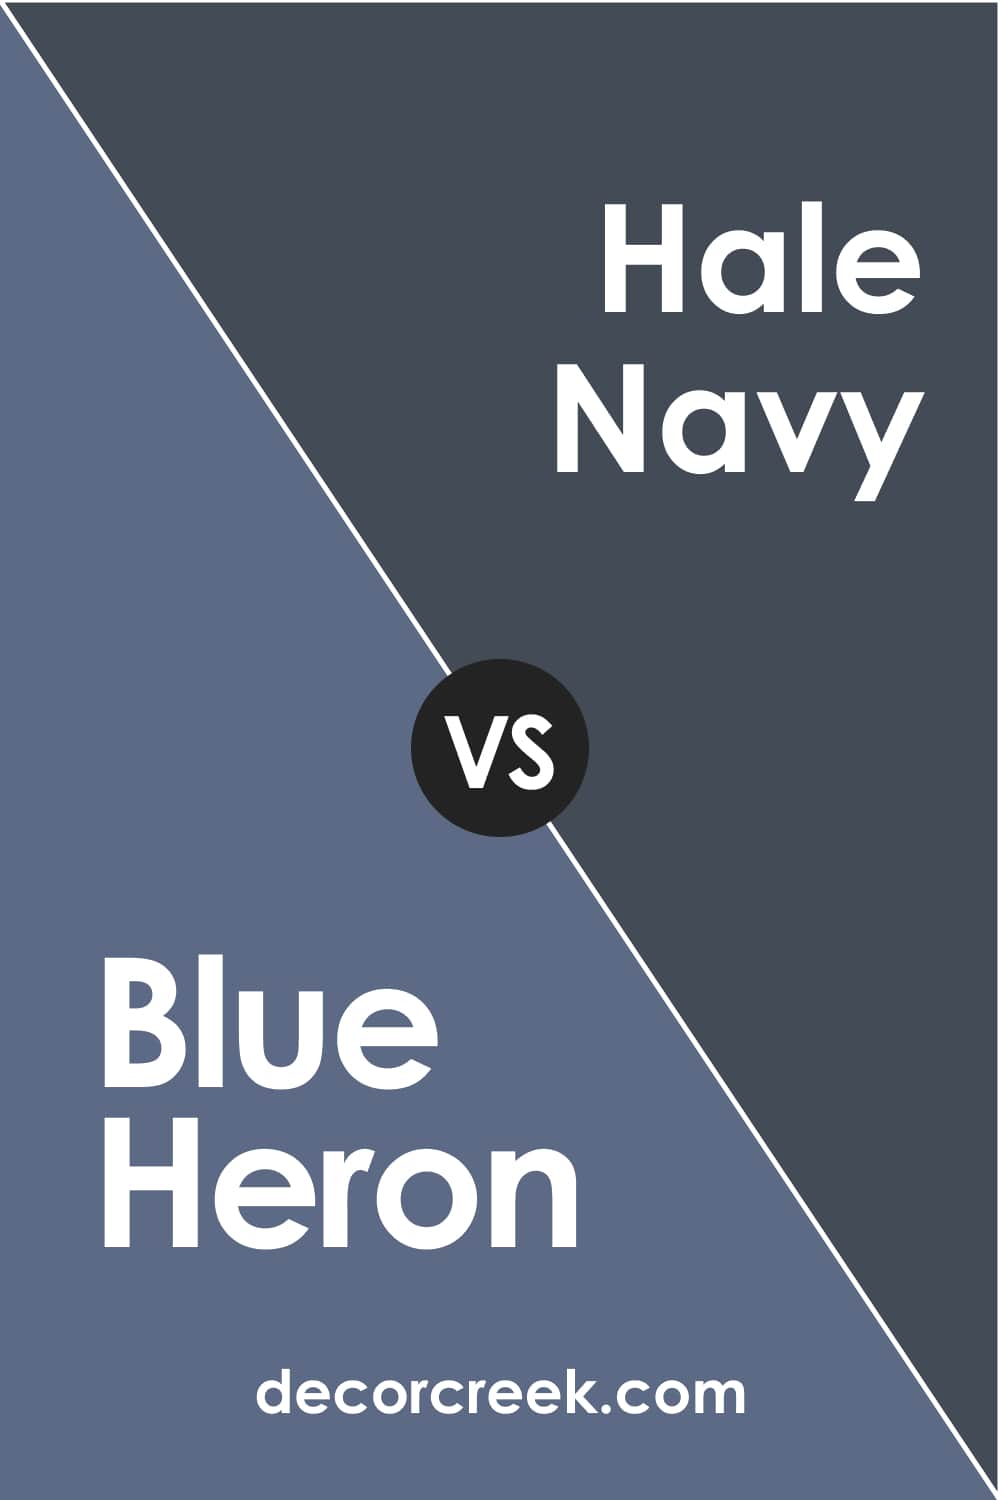 Blue Heron vs Hale Navy